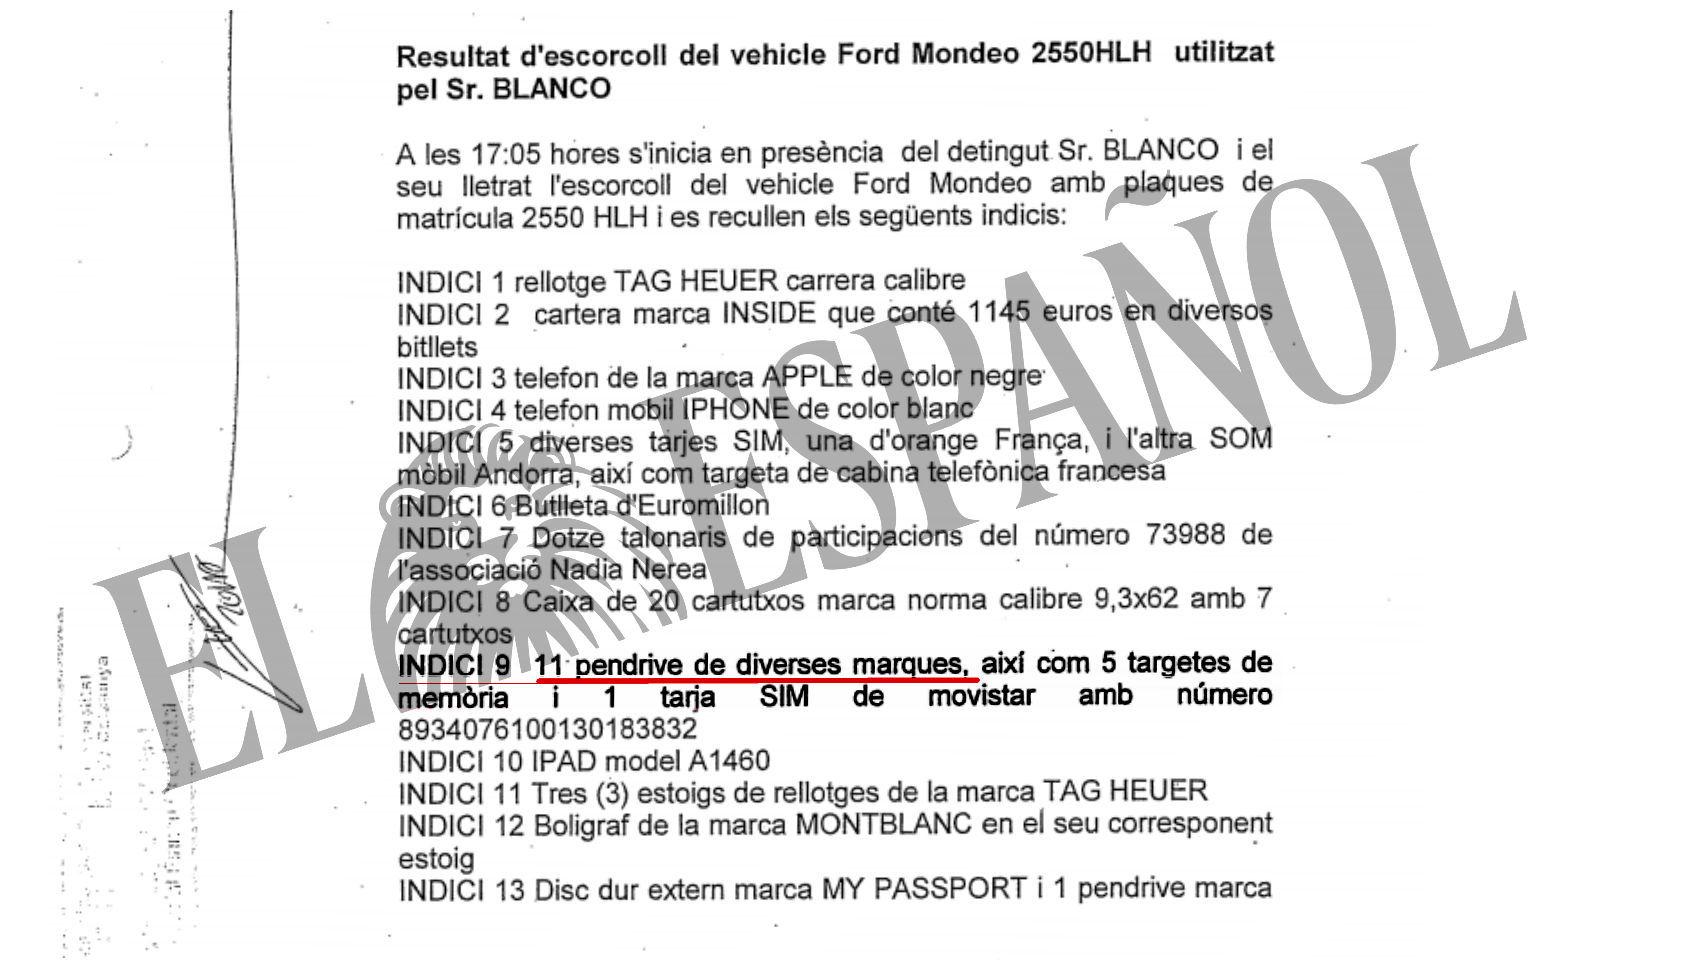 Acta del material localizado en el registro del coche.